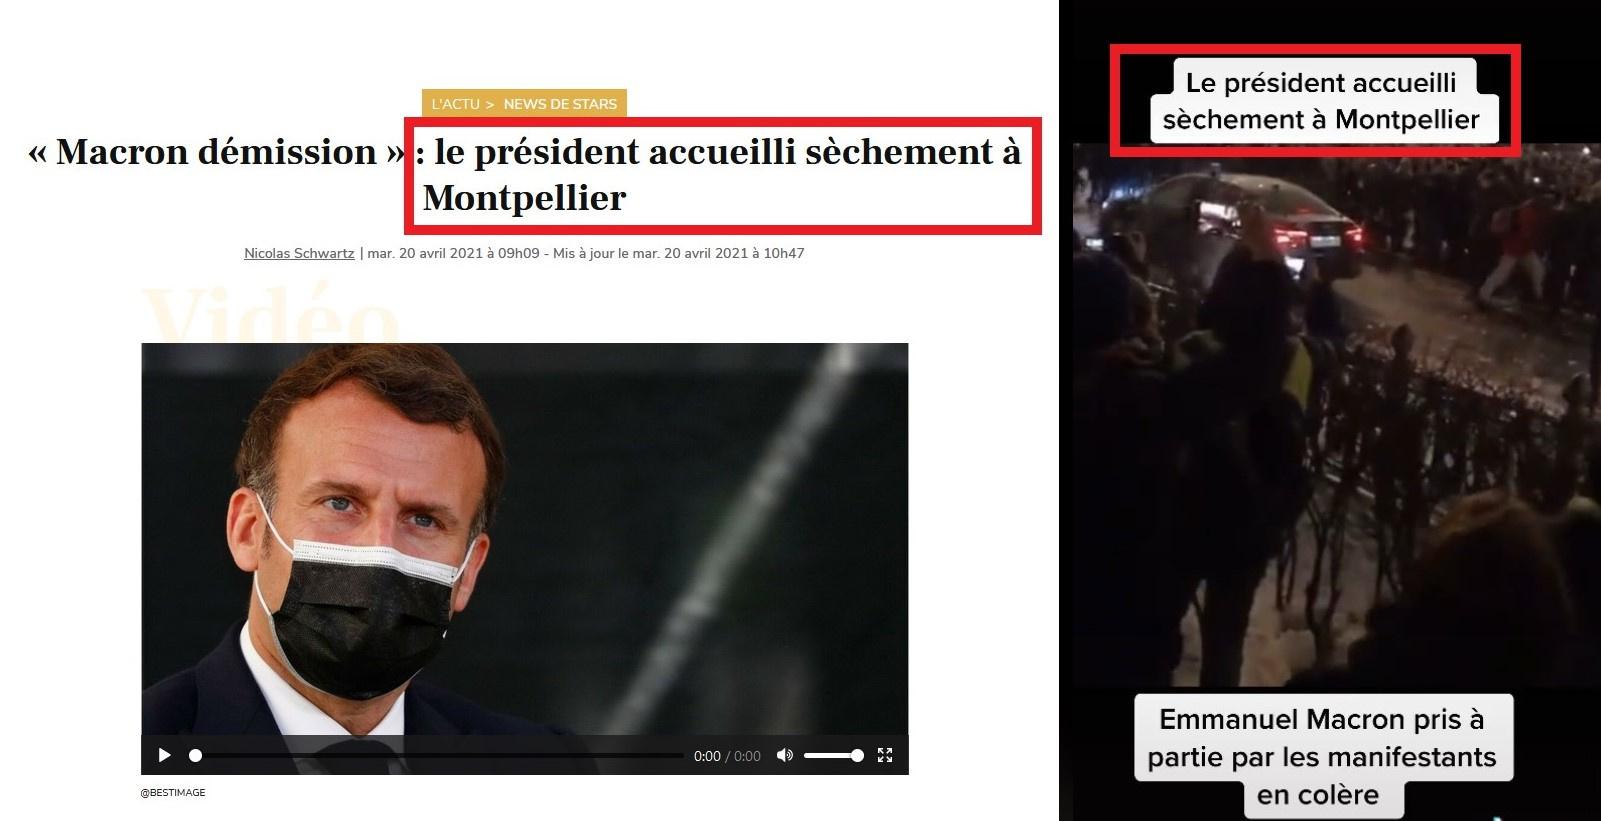 Factcheck: nee, Franse president Macron zit niet in auto die wordt aangevallen